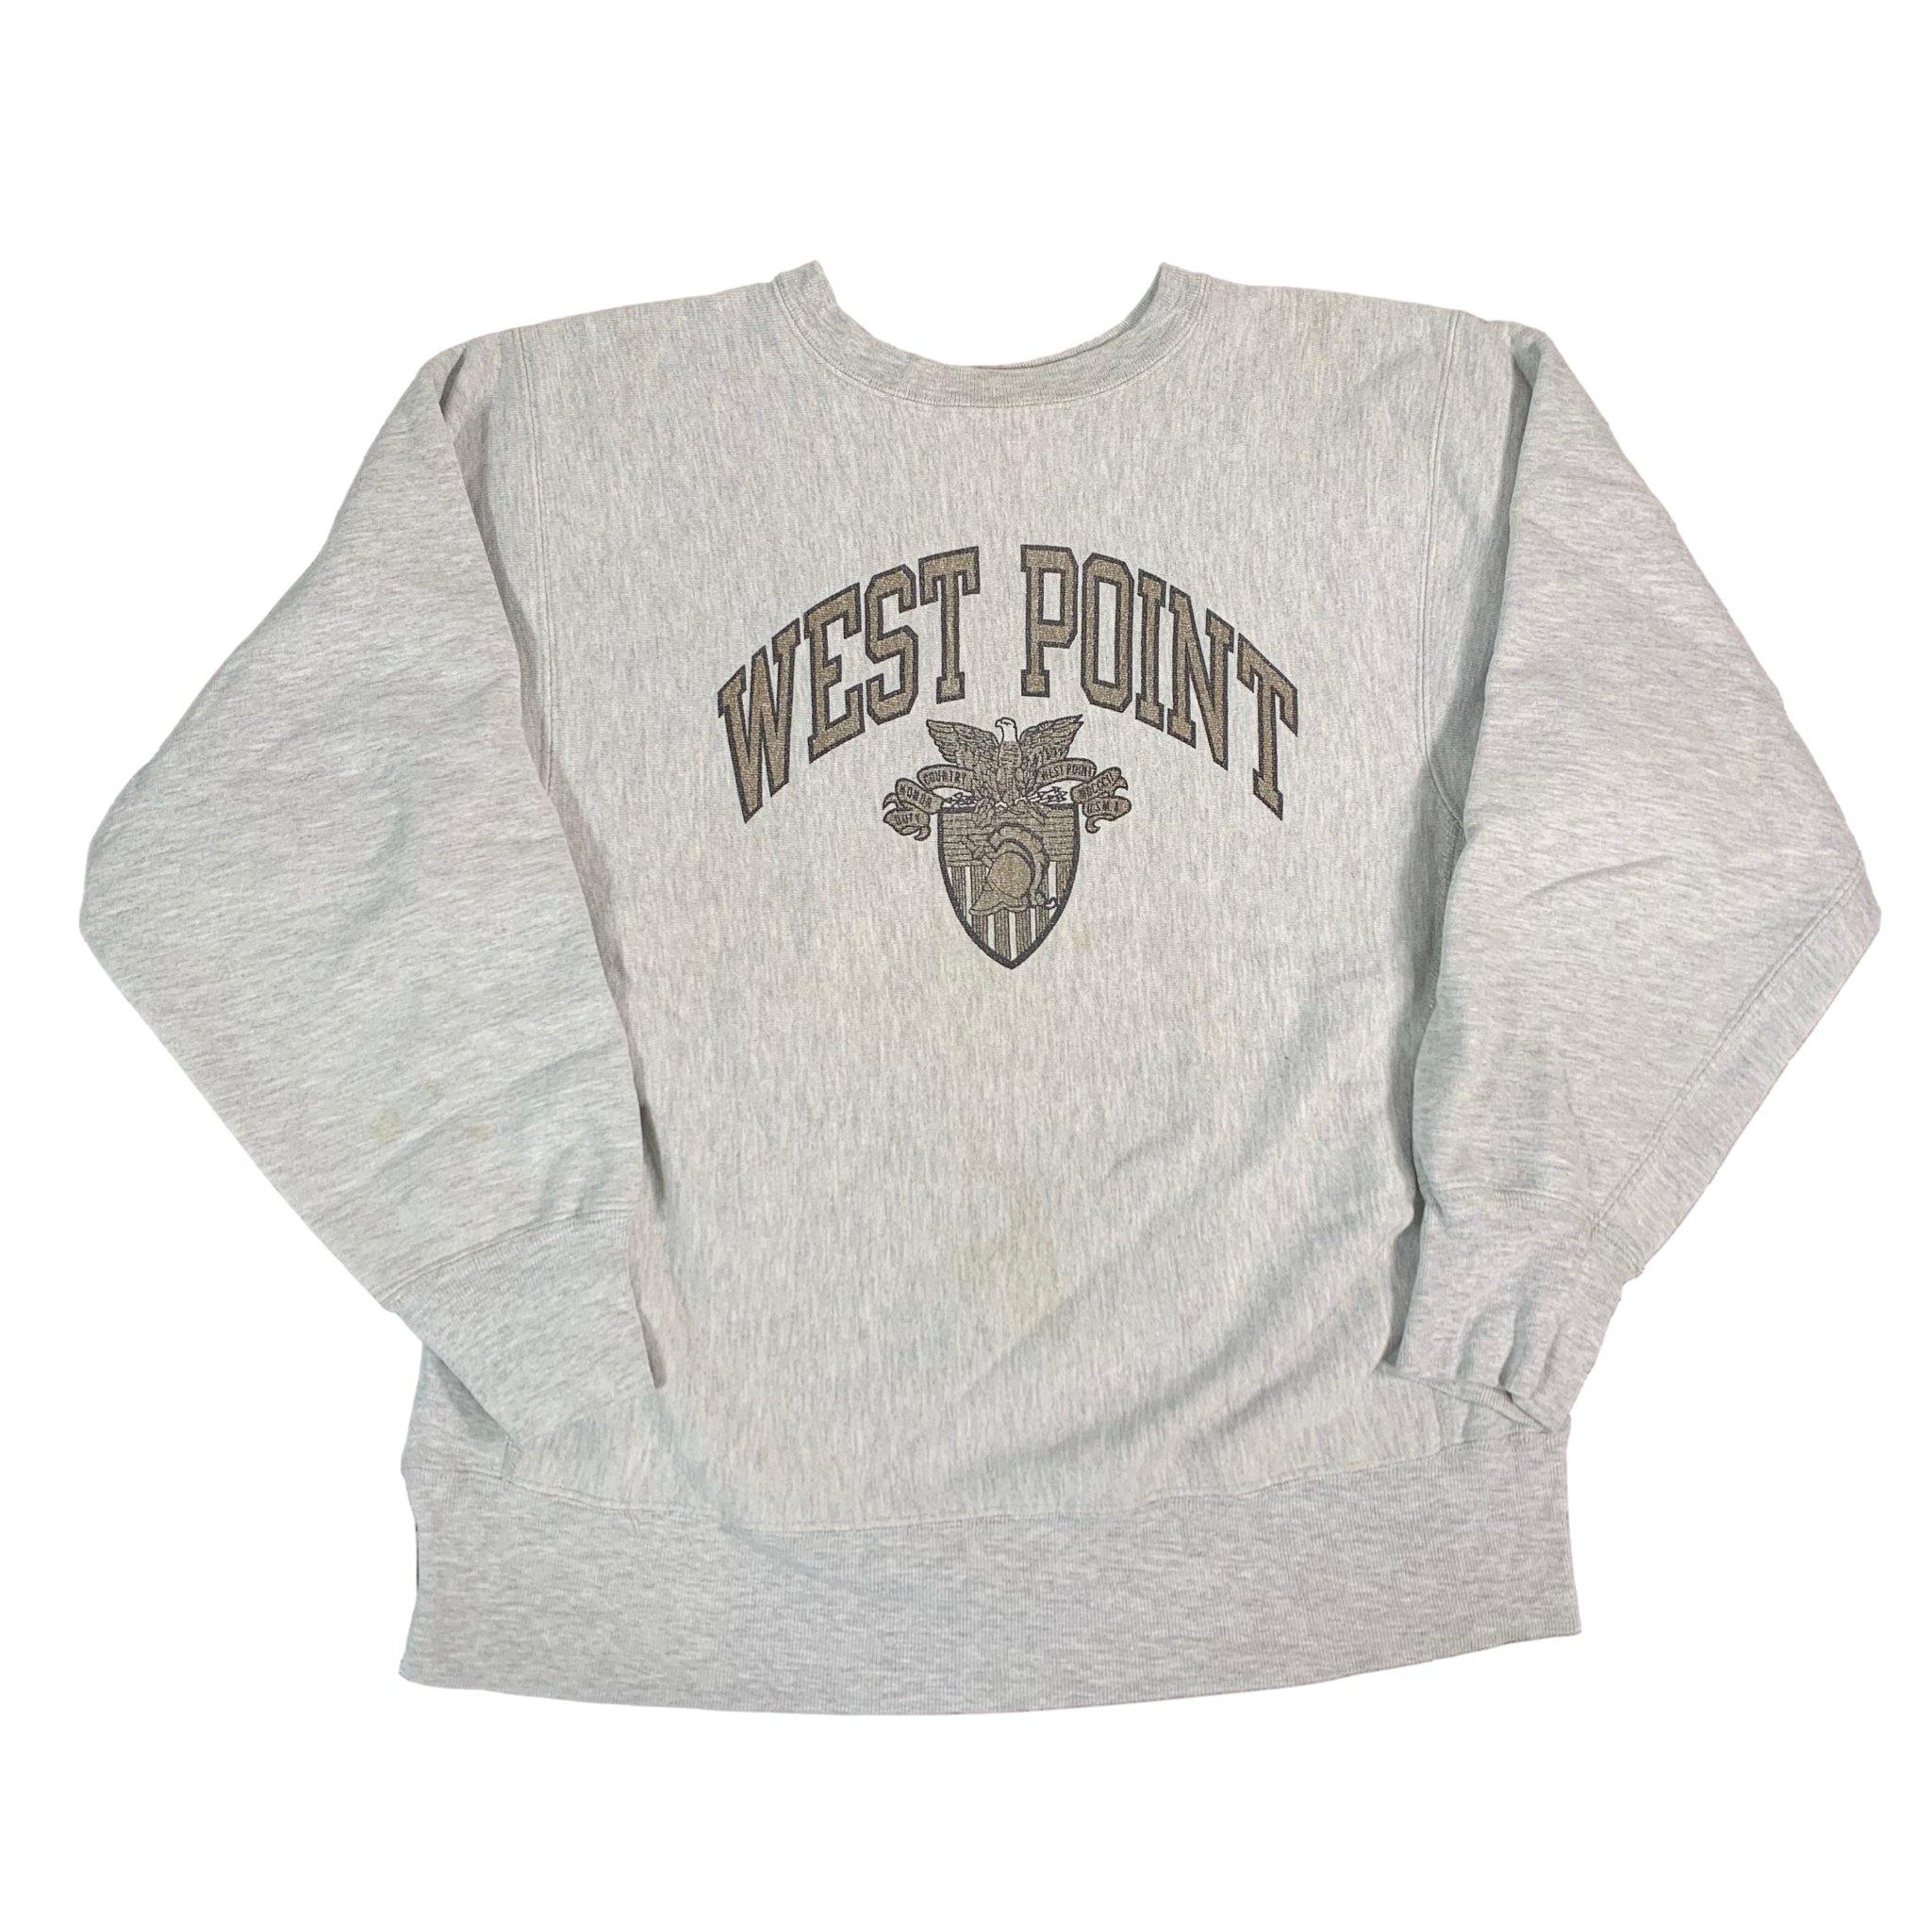 west point champion sweatshirt